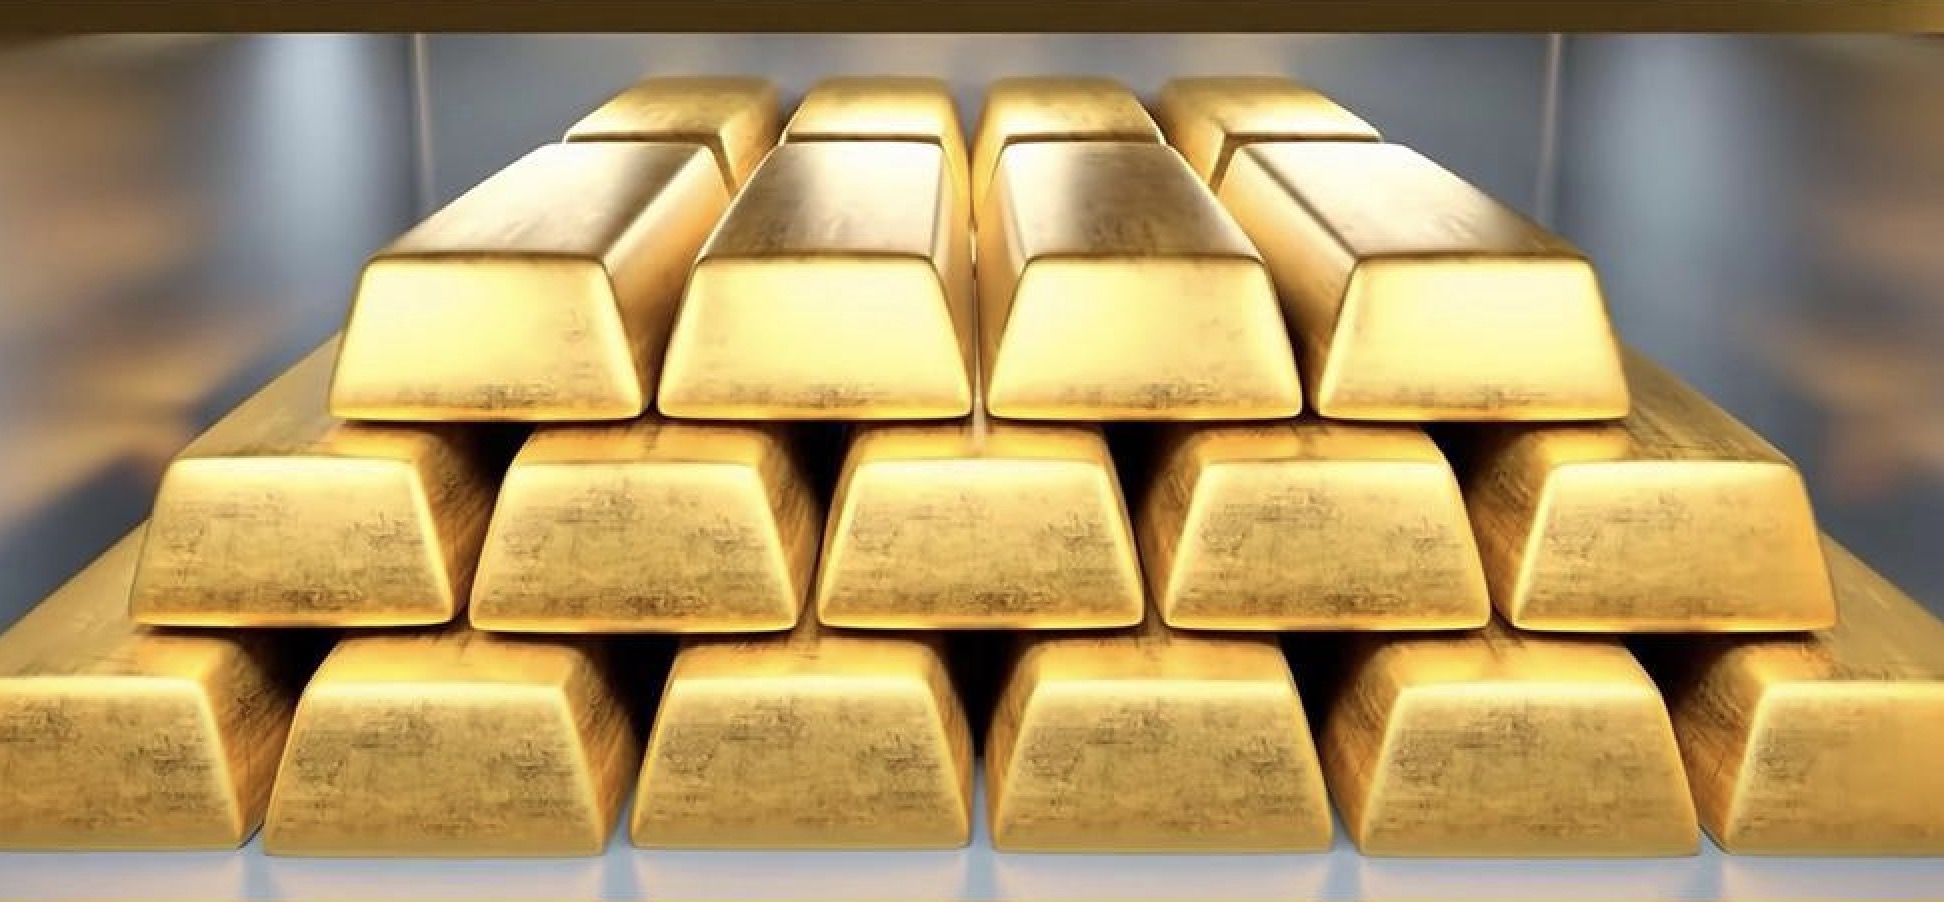 Pengingat perdagangan emas: "Eagle" Powell luar biasa, harga emas diblokir di angka 2400, waspadai risiko kejutan yang memuncak